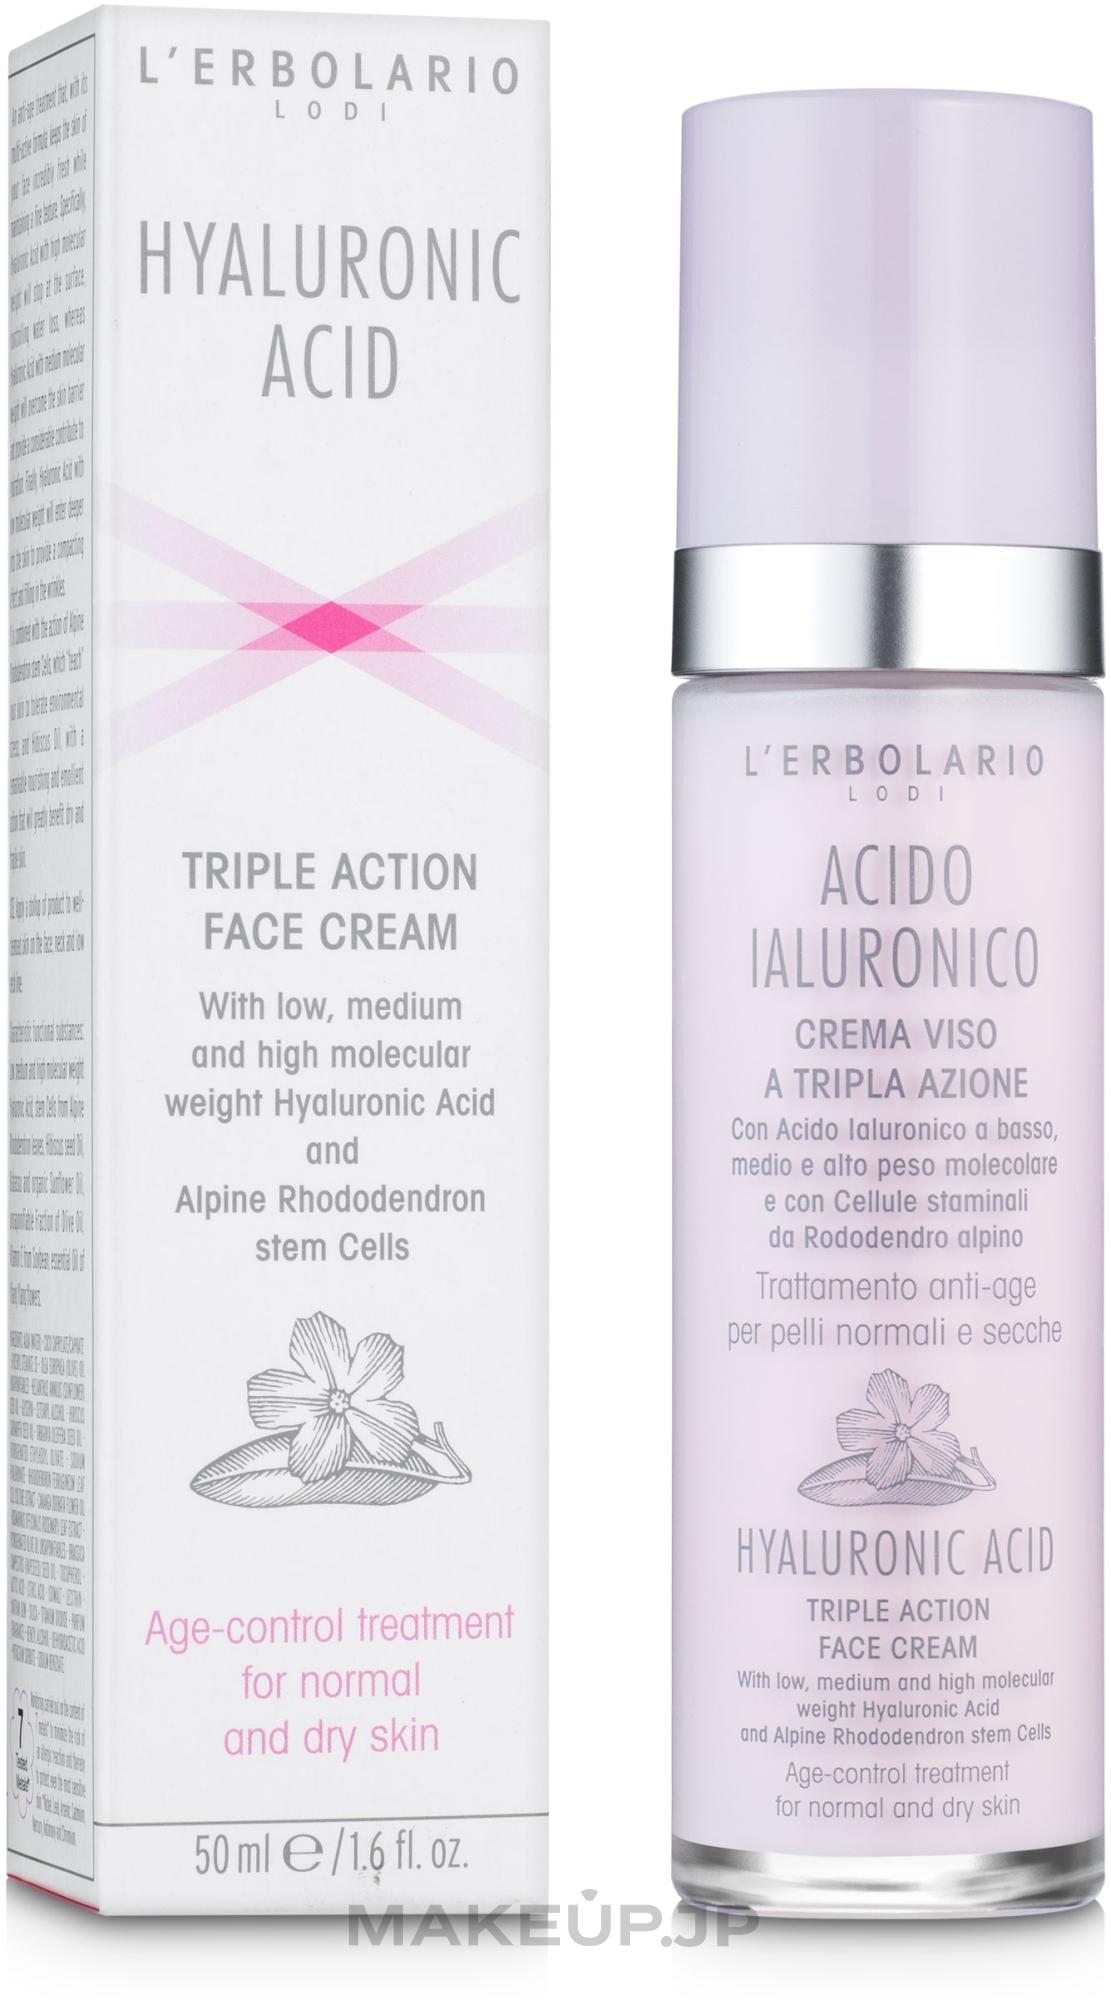 Hyaluronic Acid Face Cream for Normal & Dry Skin - L'Erbolario Acido Ialuronico Crema Viso a Tripla Azione  — photo 50 ml